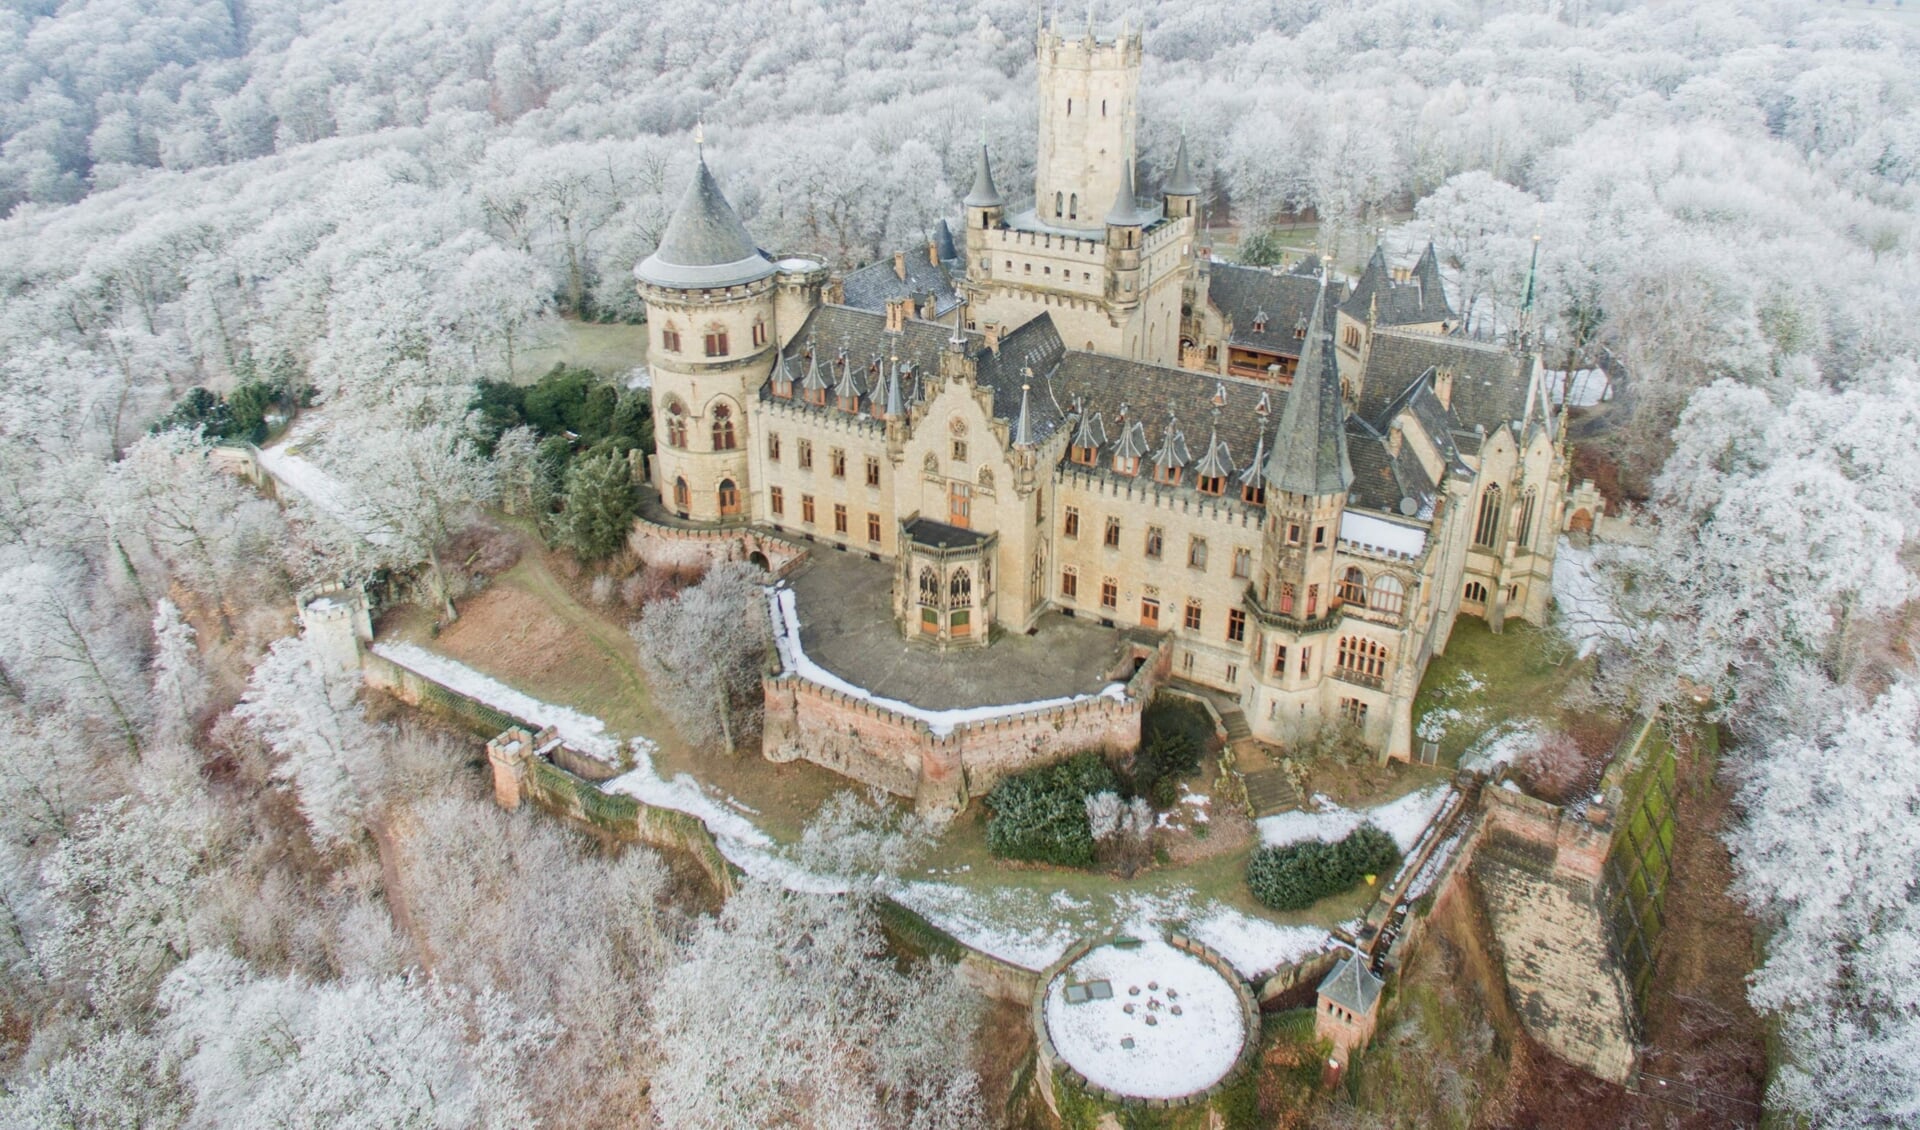 Det godt 150 år gamle Marienburg Slot i sin vinterdragt. Det ligger 25 kilometer syd for Hannover. Det er en populær turistattraktion, der hvert år besøges af omkring 200.000 gæster. 